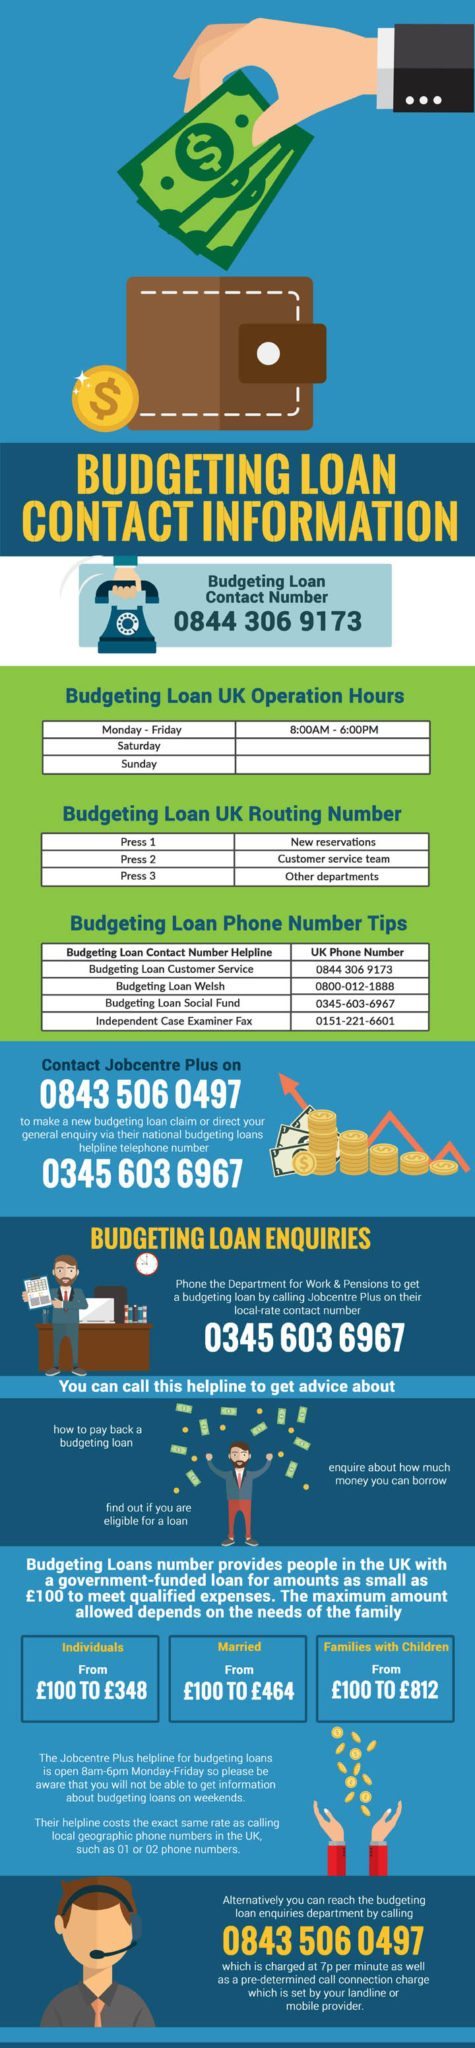 budgeting loan helpline